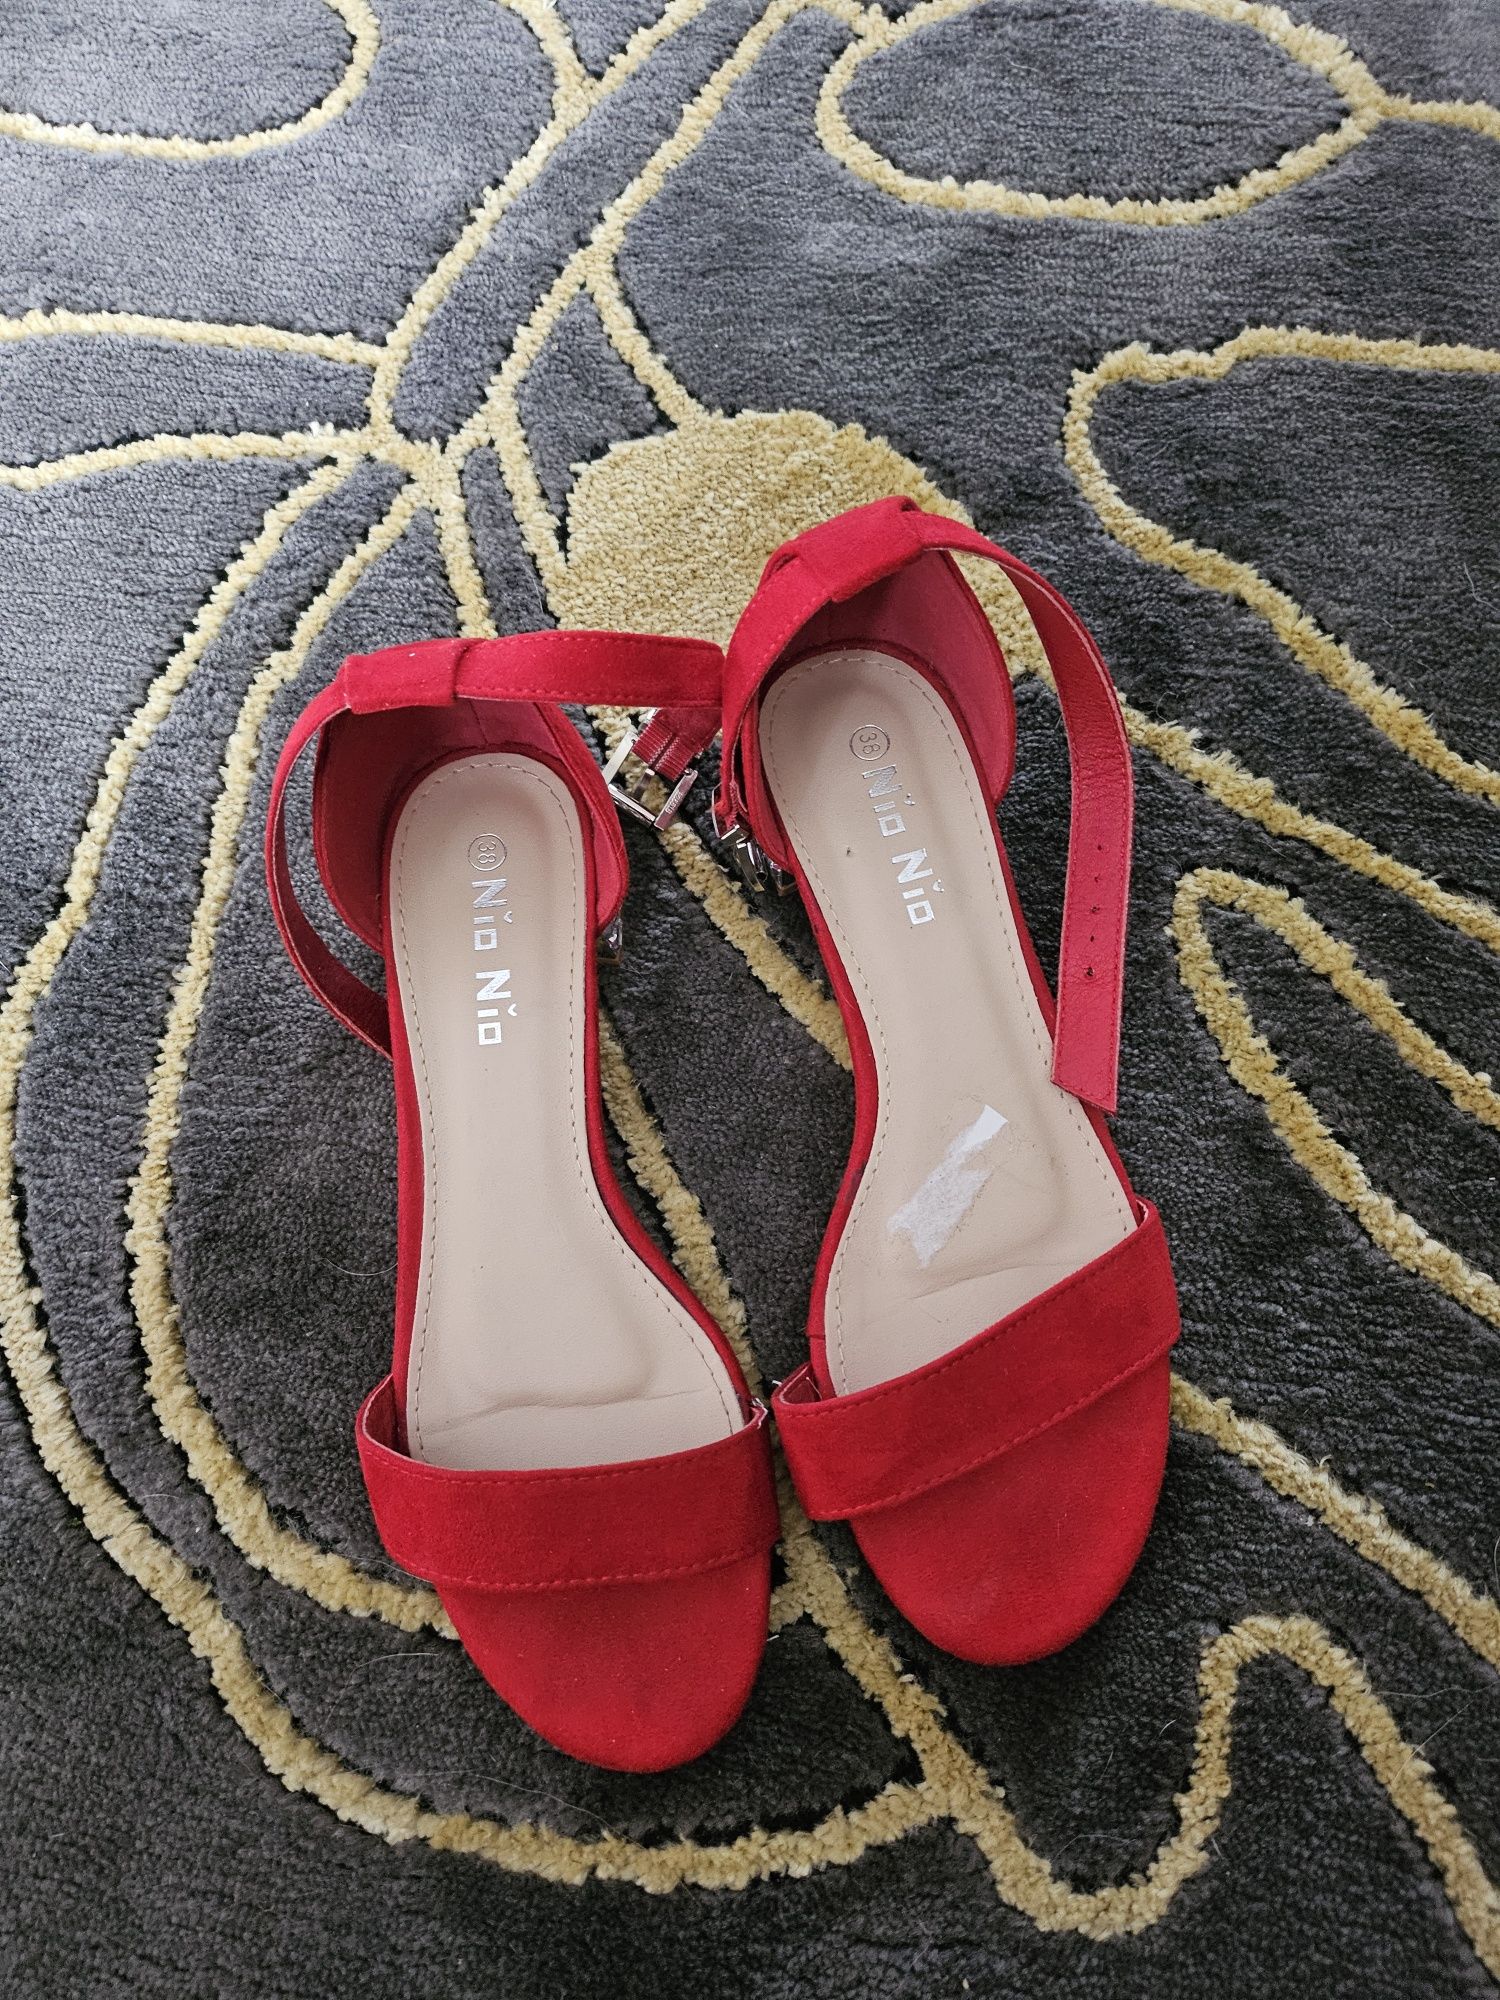 Piękne sandalki czerwone.